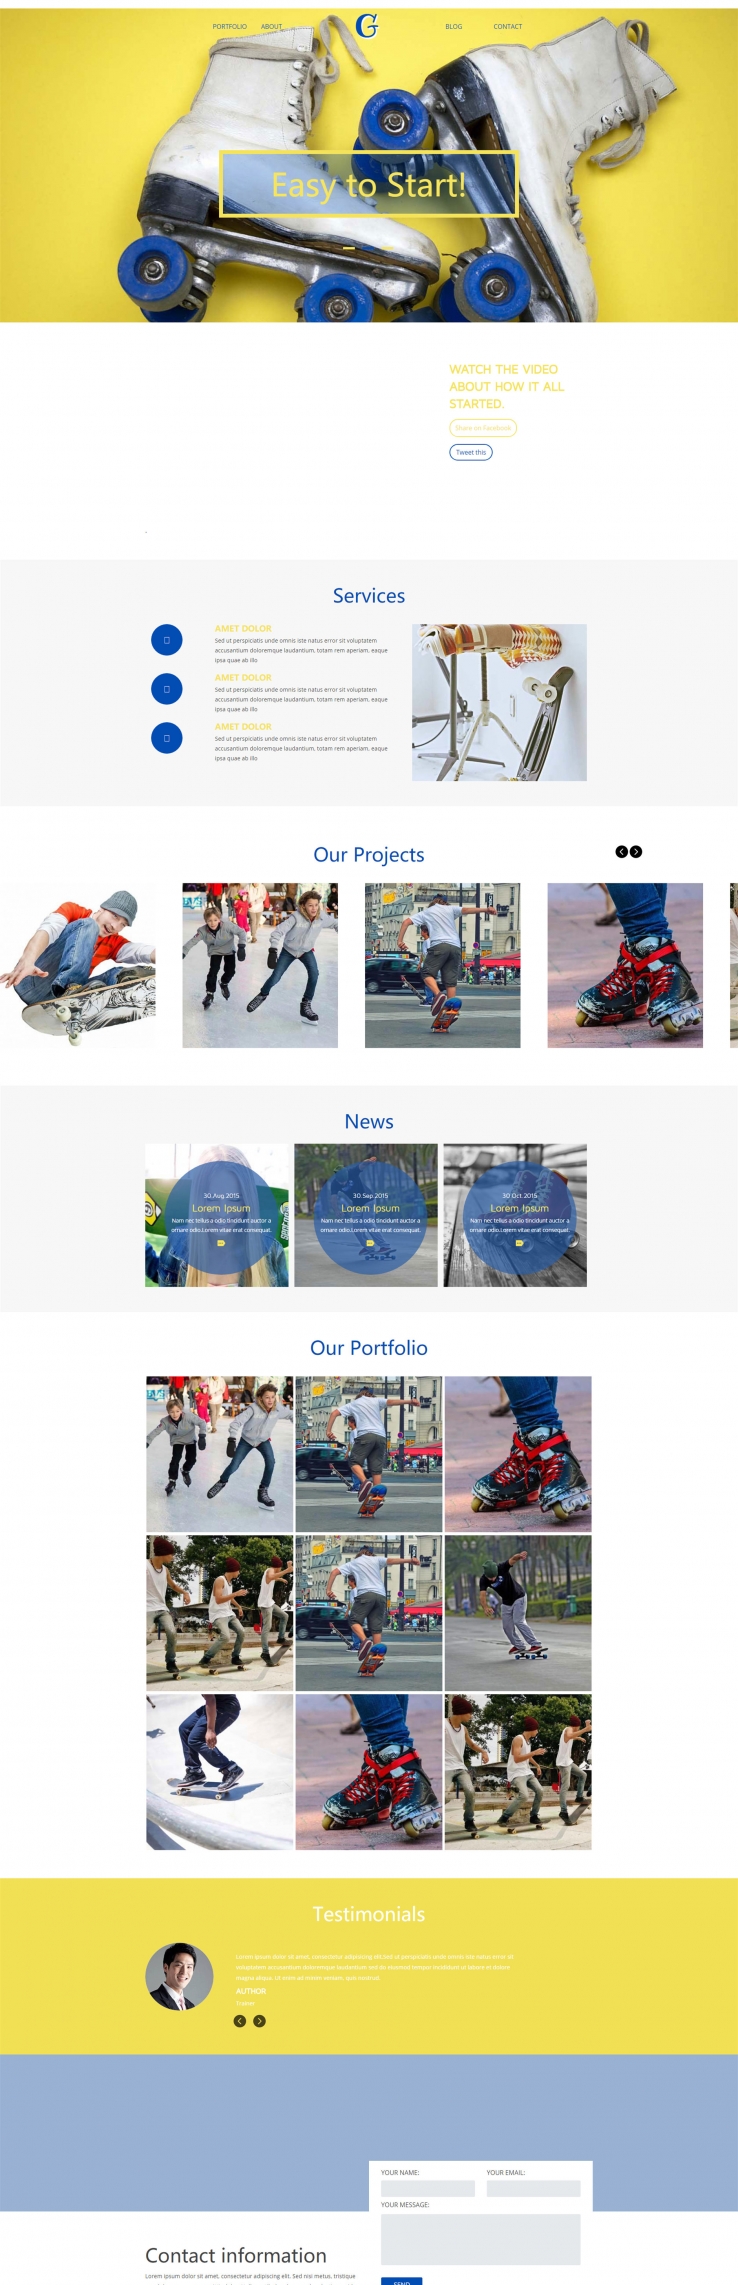 简洁大气的滑板运动爱好者官网网页模板下载